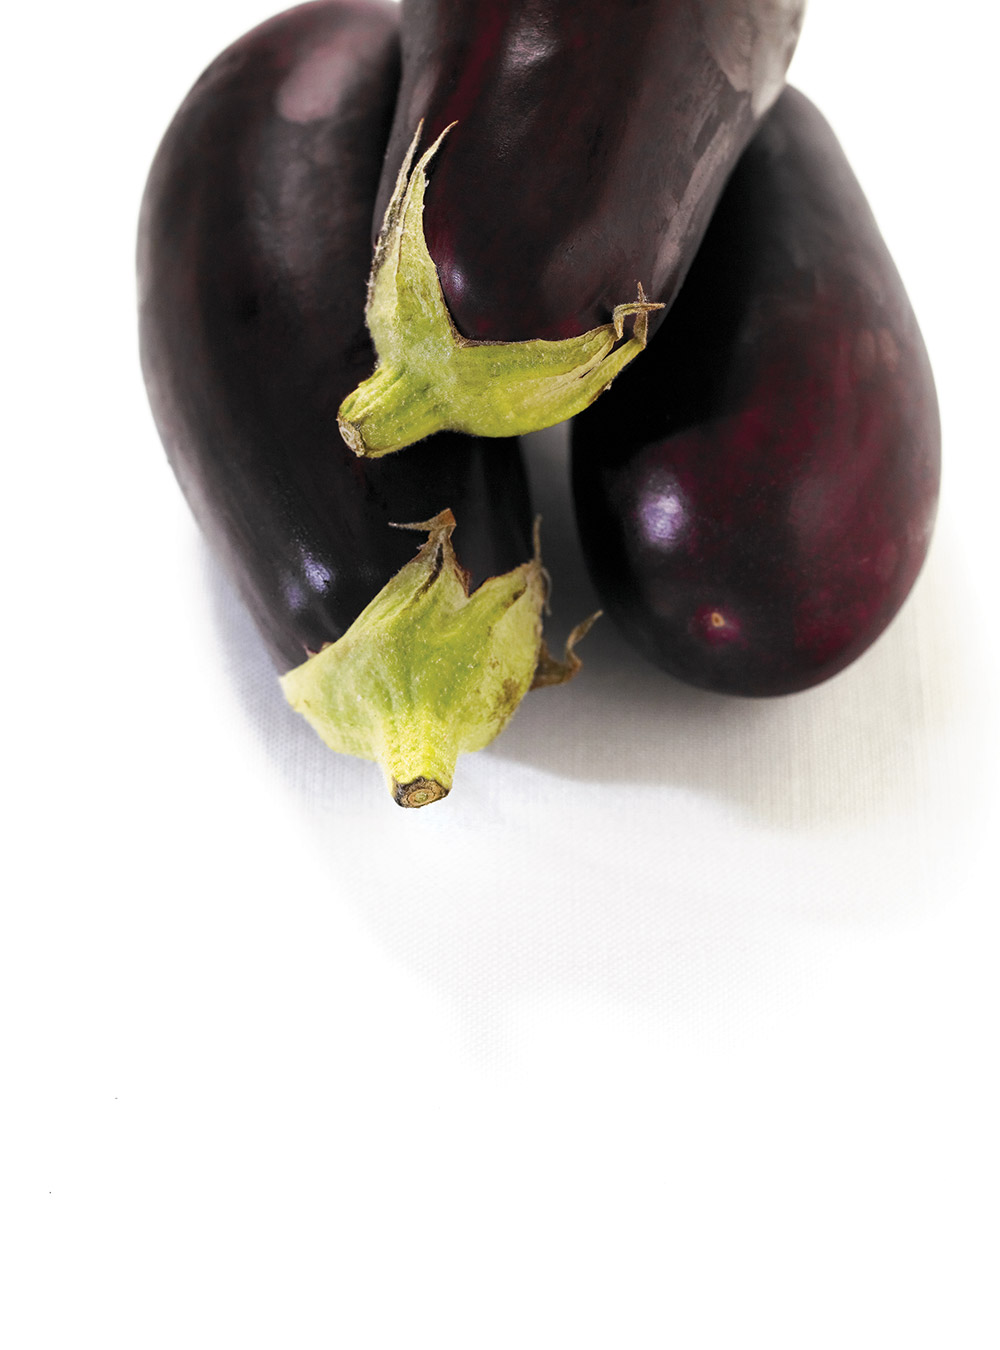 Eggplant Rolls